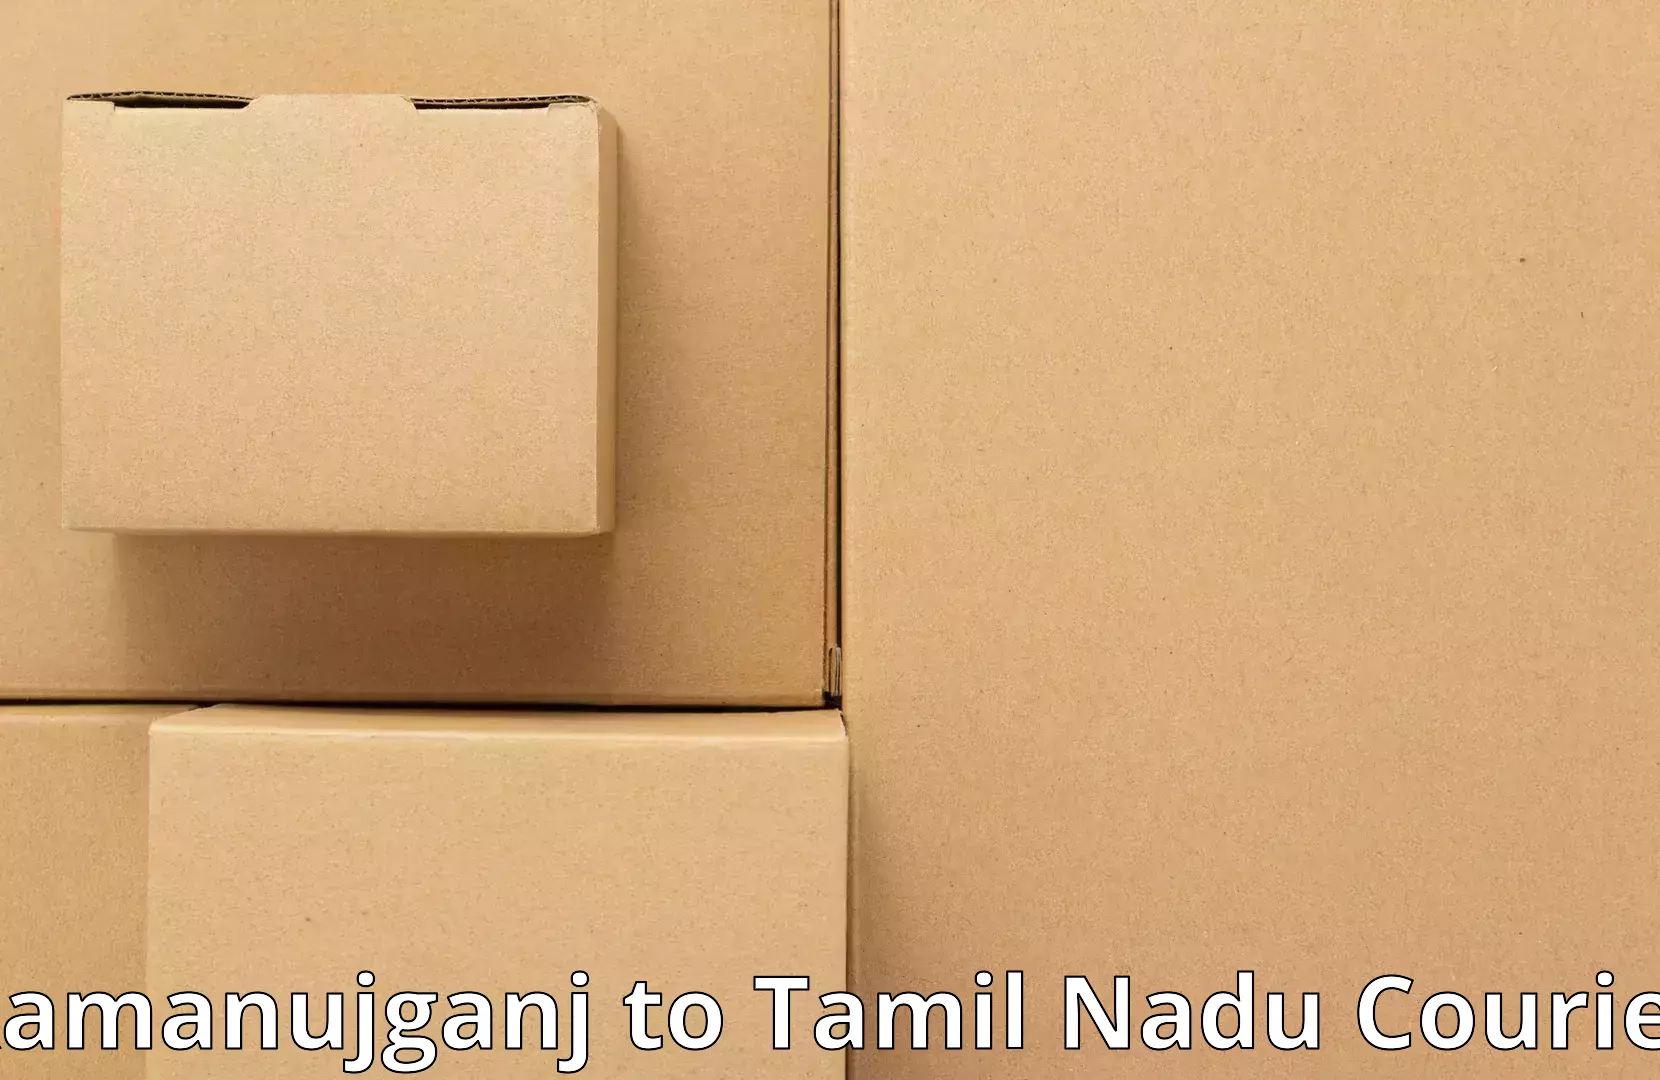 Furniture moving plans Ramanujganj to Tamil Nadu